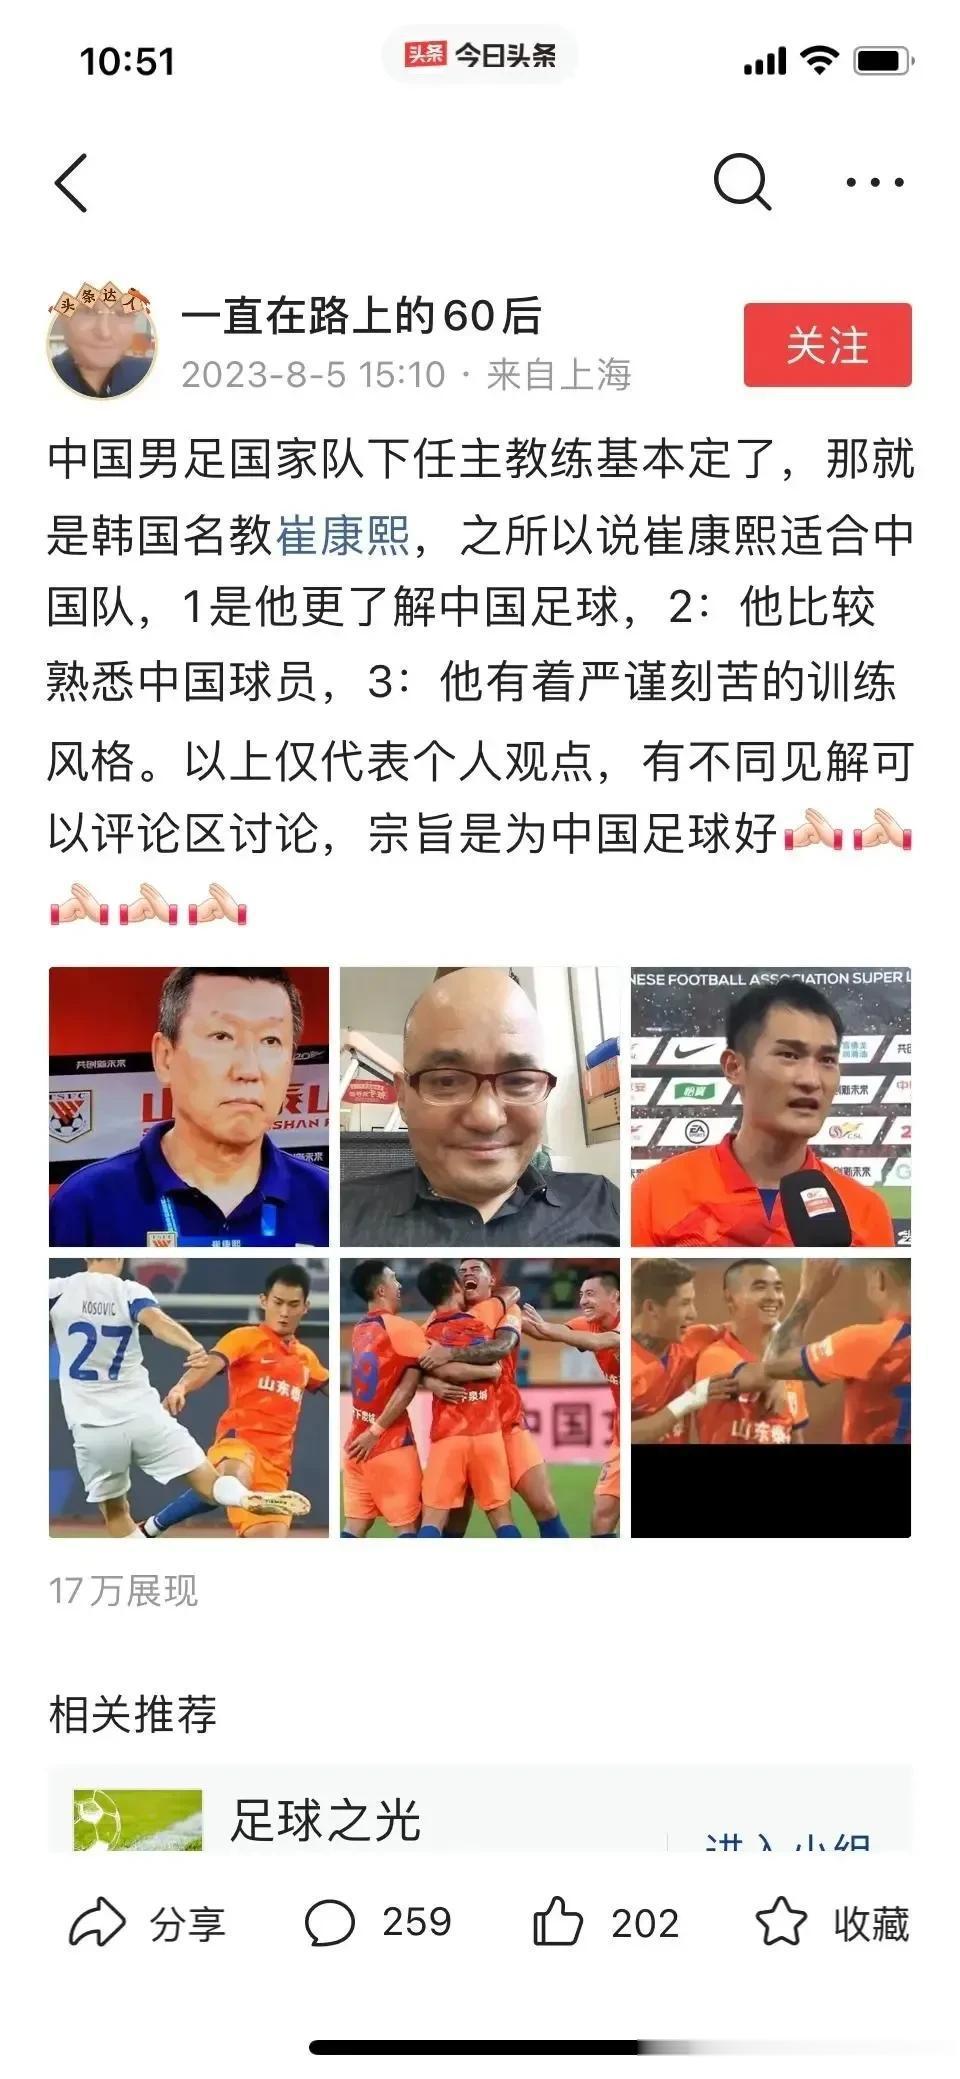 上海海港球迷真踏马孬！

看泰山队在崔康熙的带领下越来越好，就出如此下三滥的招式(1)